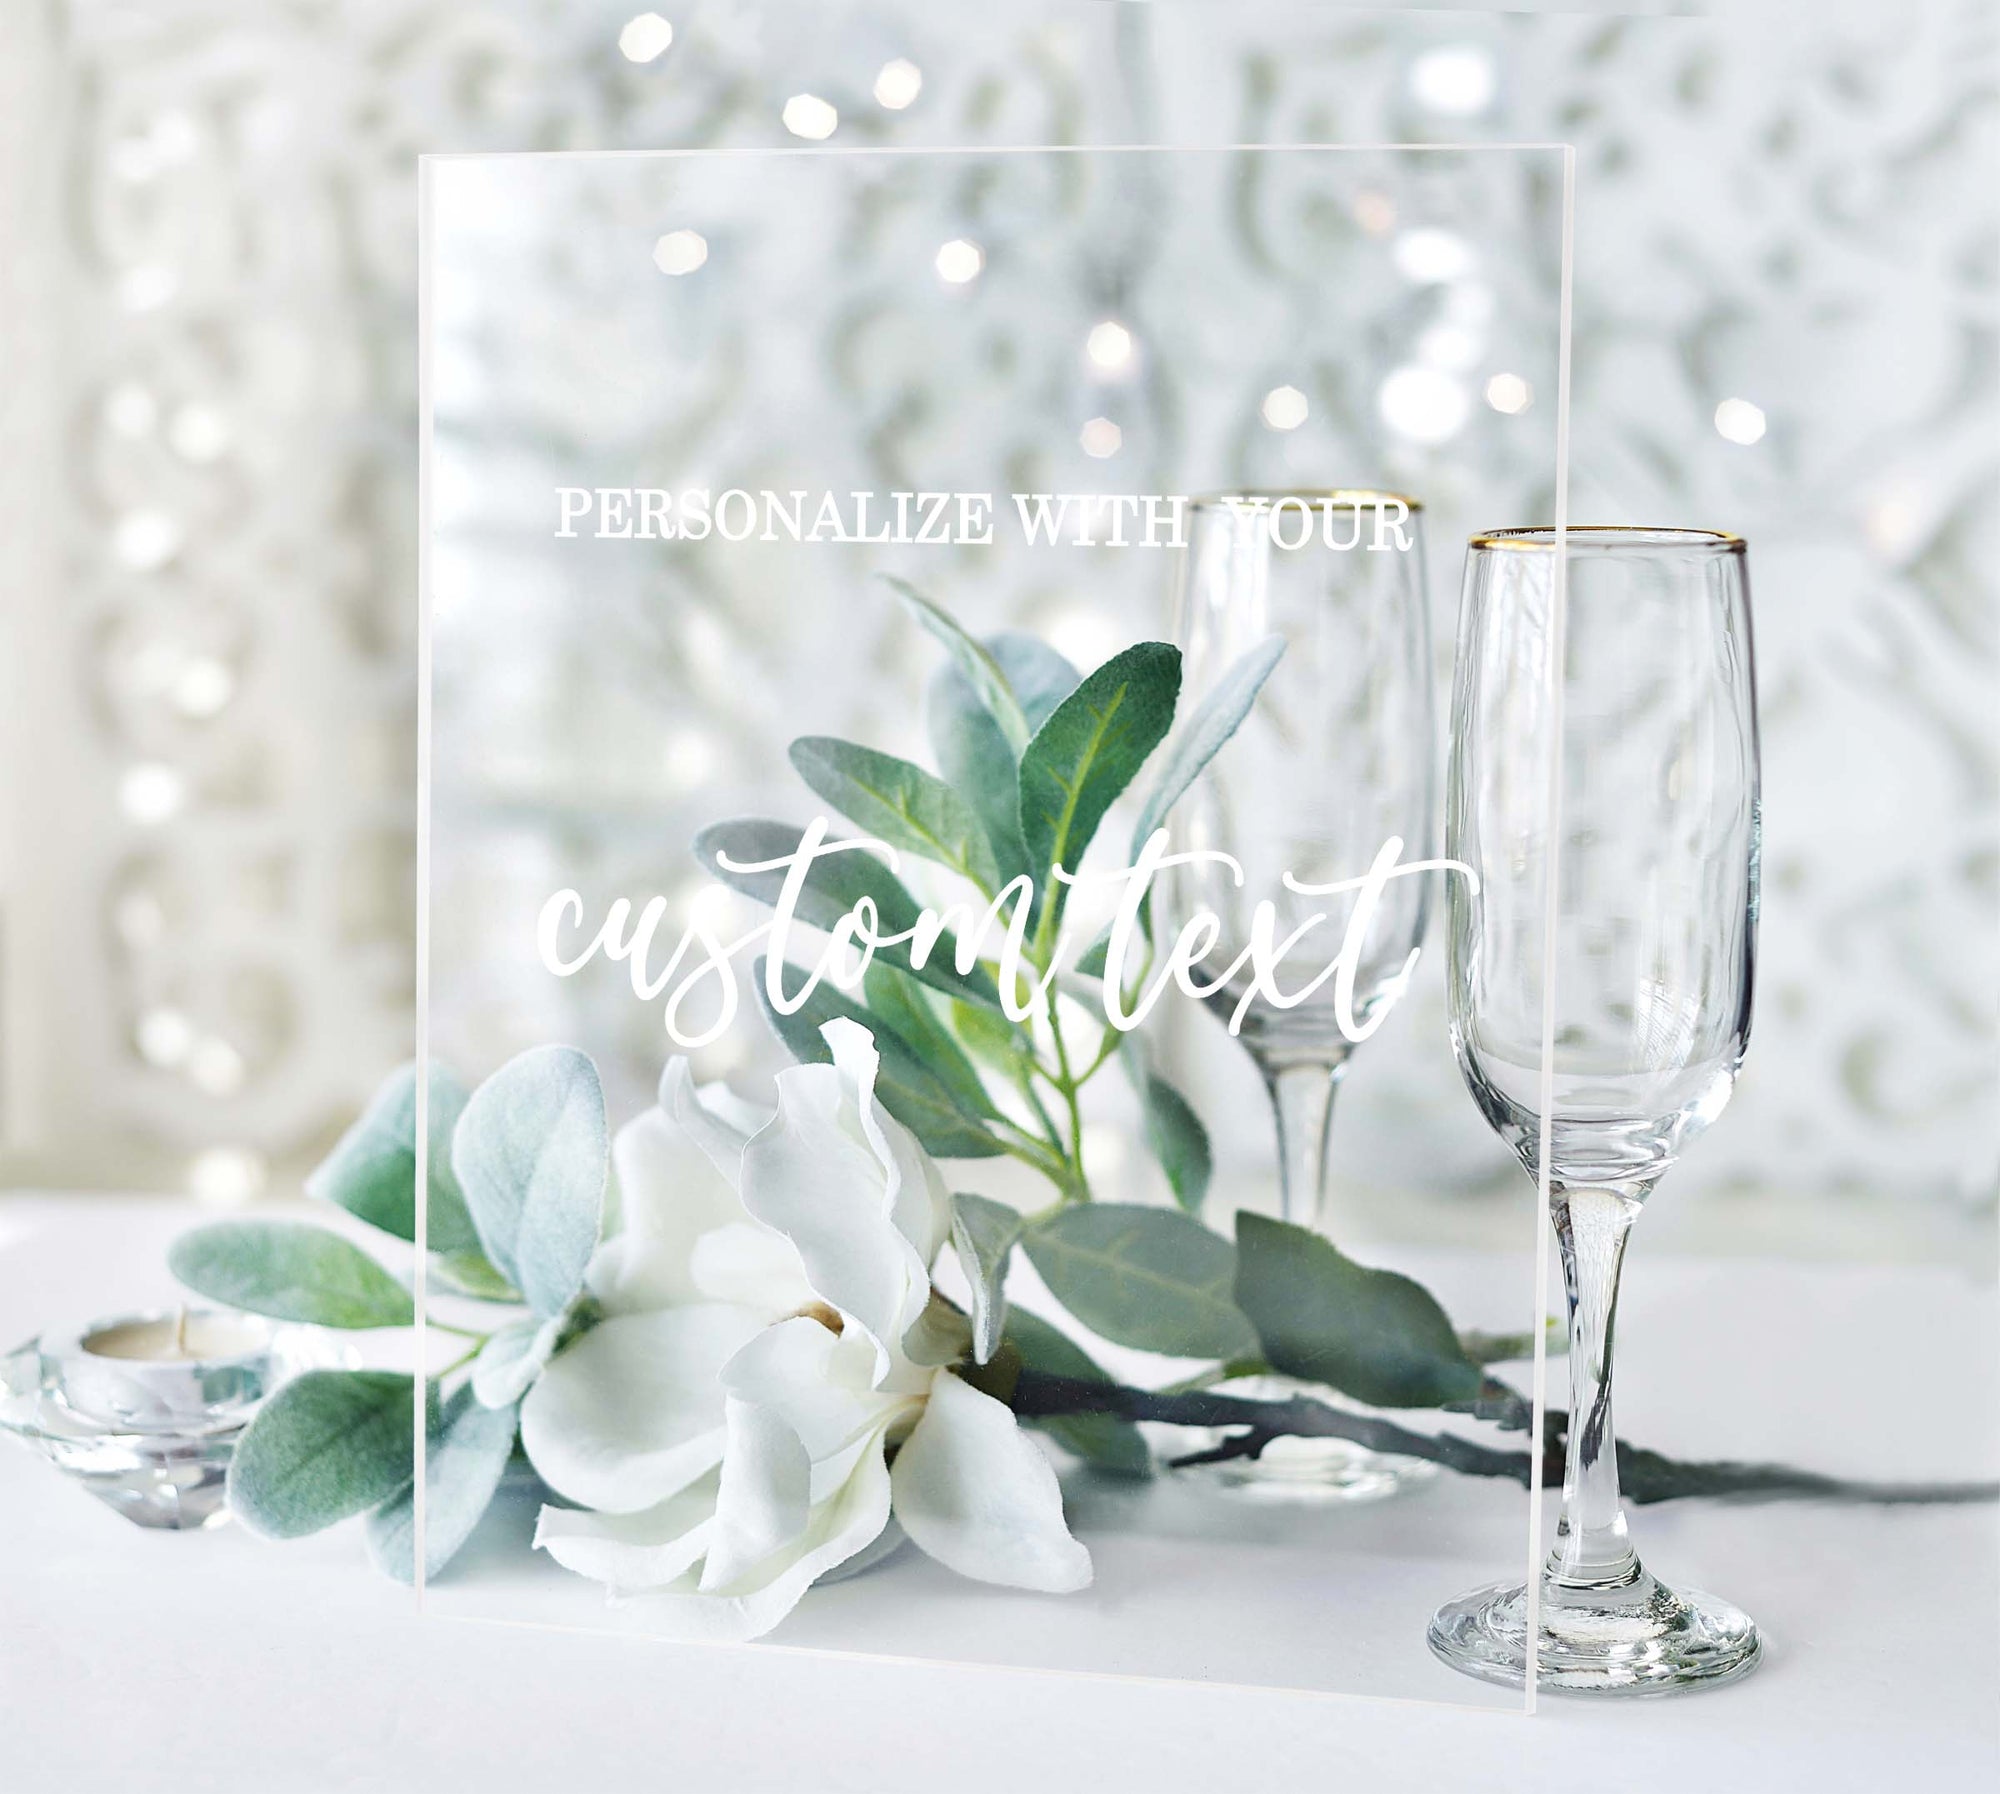 Custom Text Acrylic Wedding Table Sign, Clear, White, or Black Acrylic